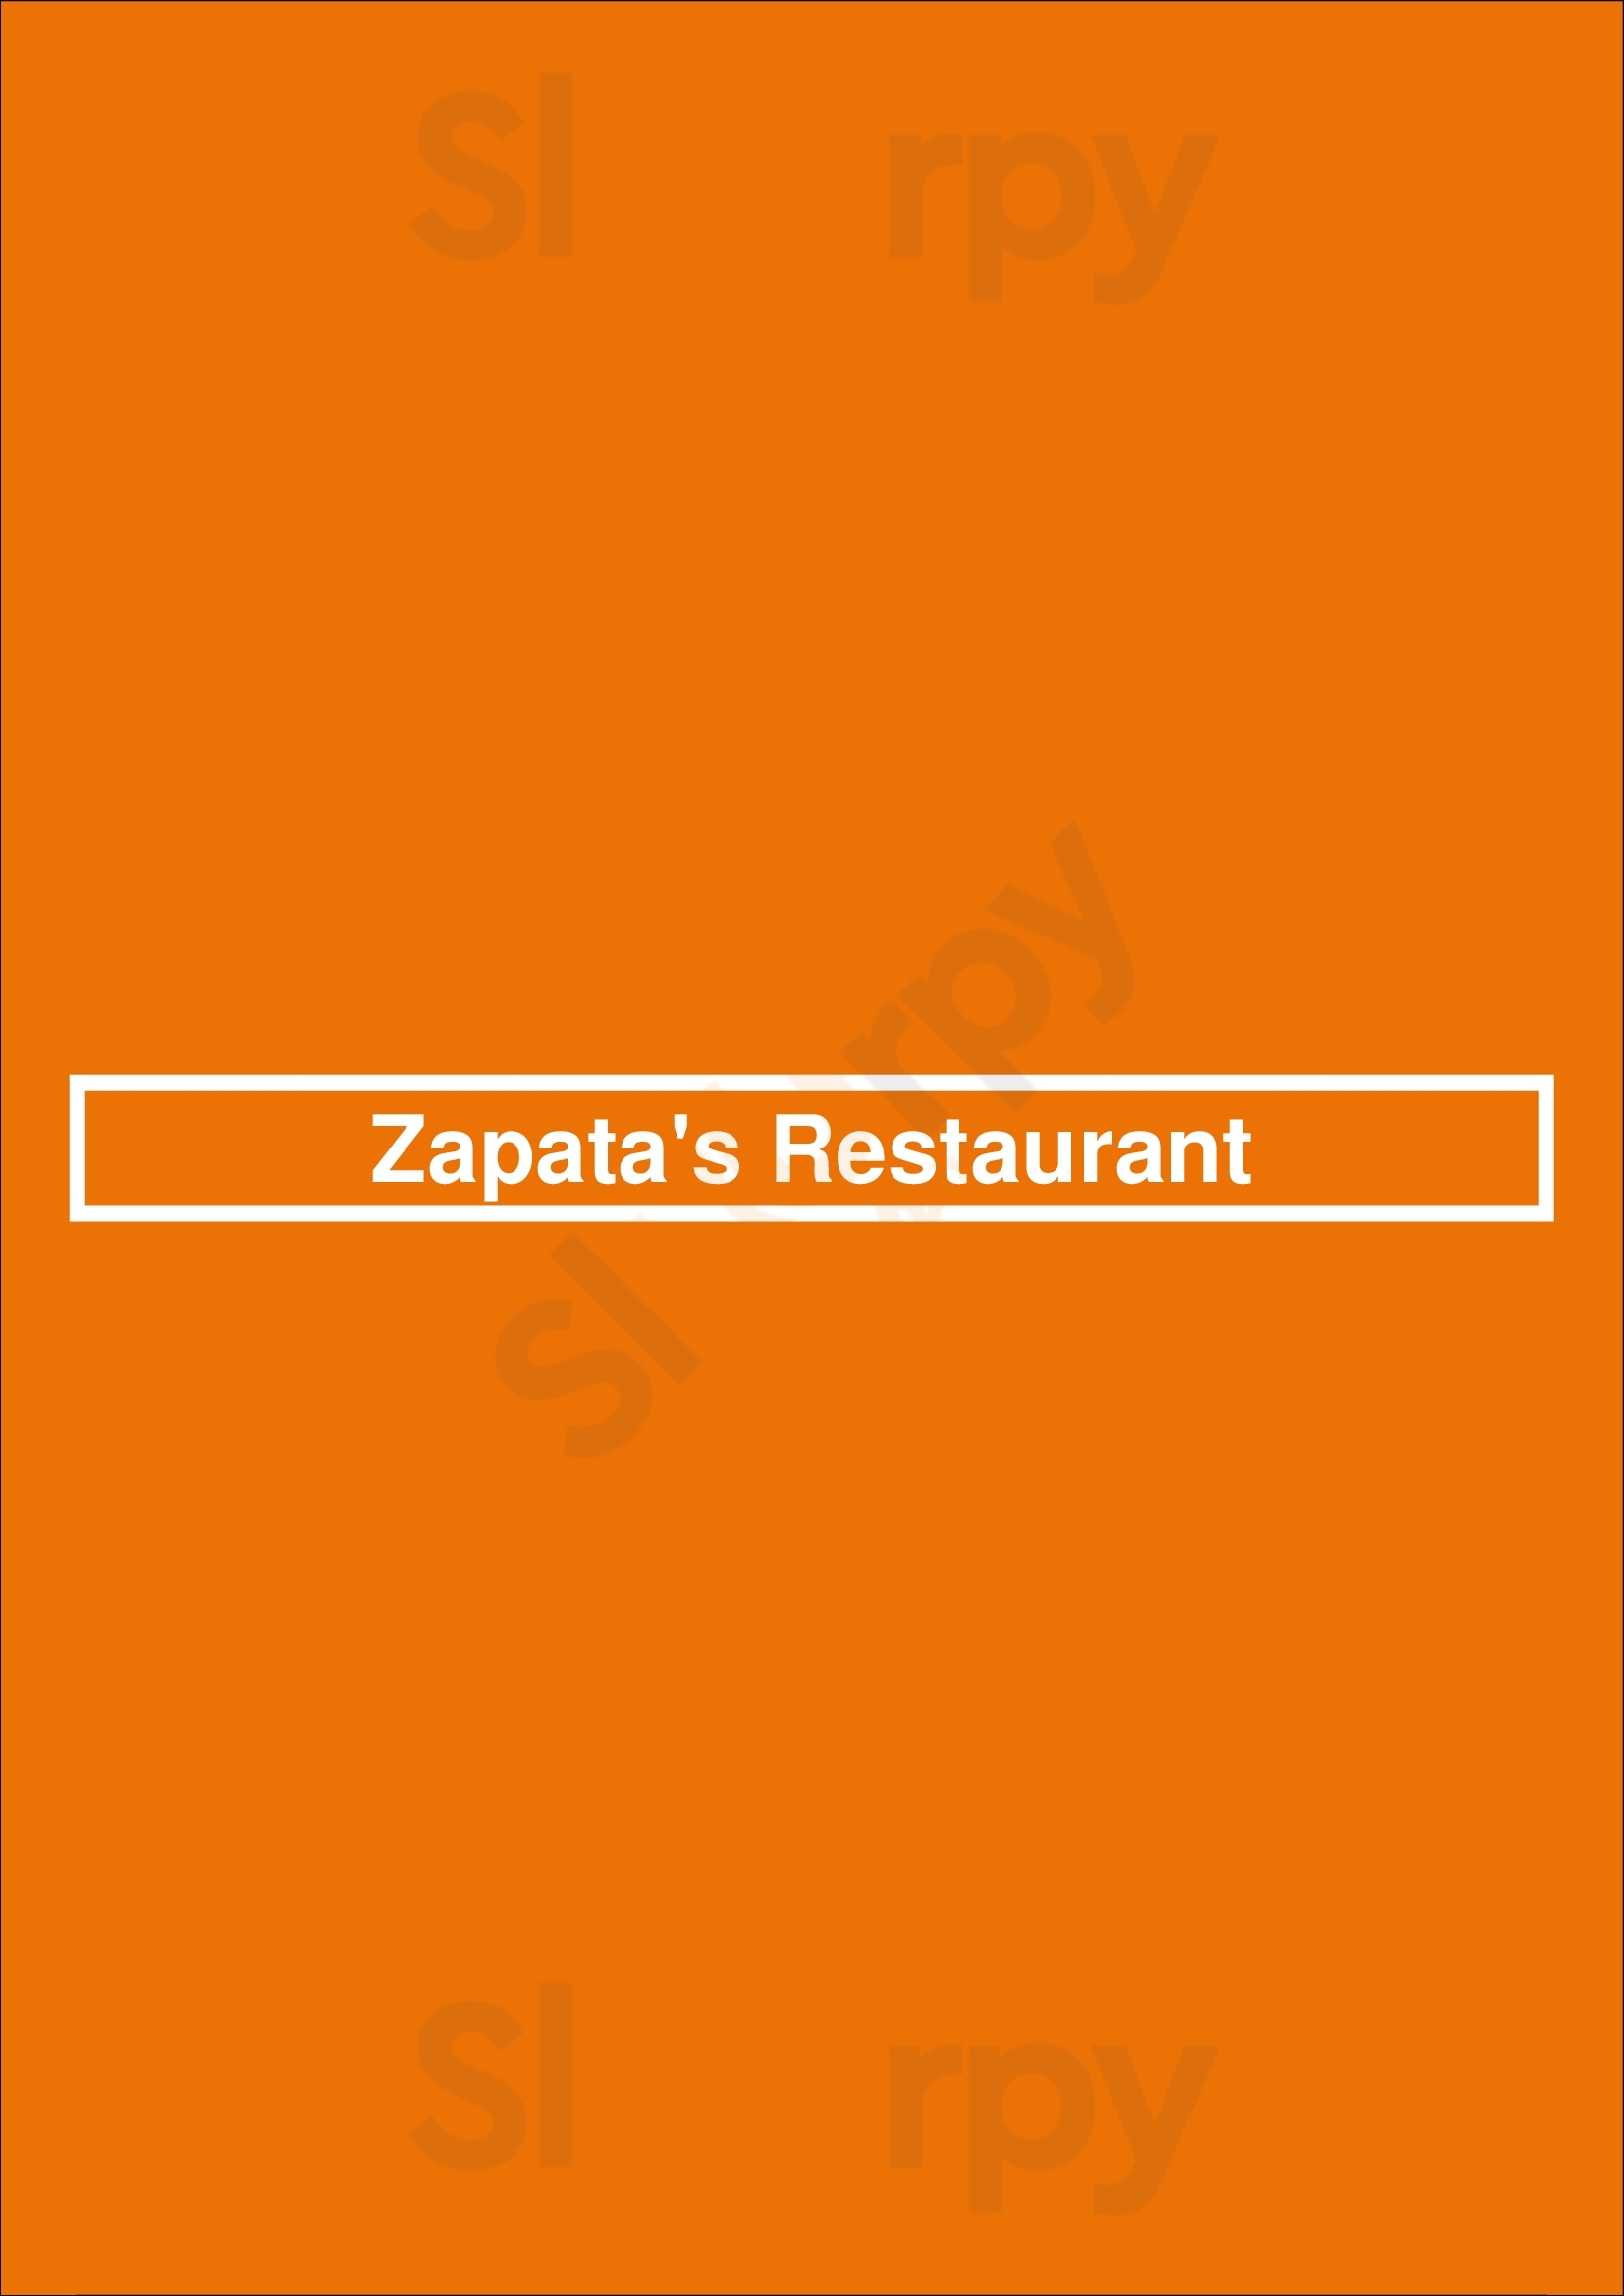 Zapata's Restaurant St. John's Menu - 1